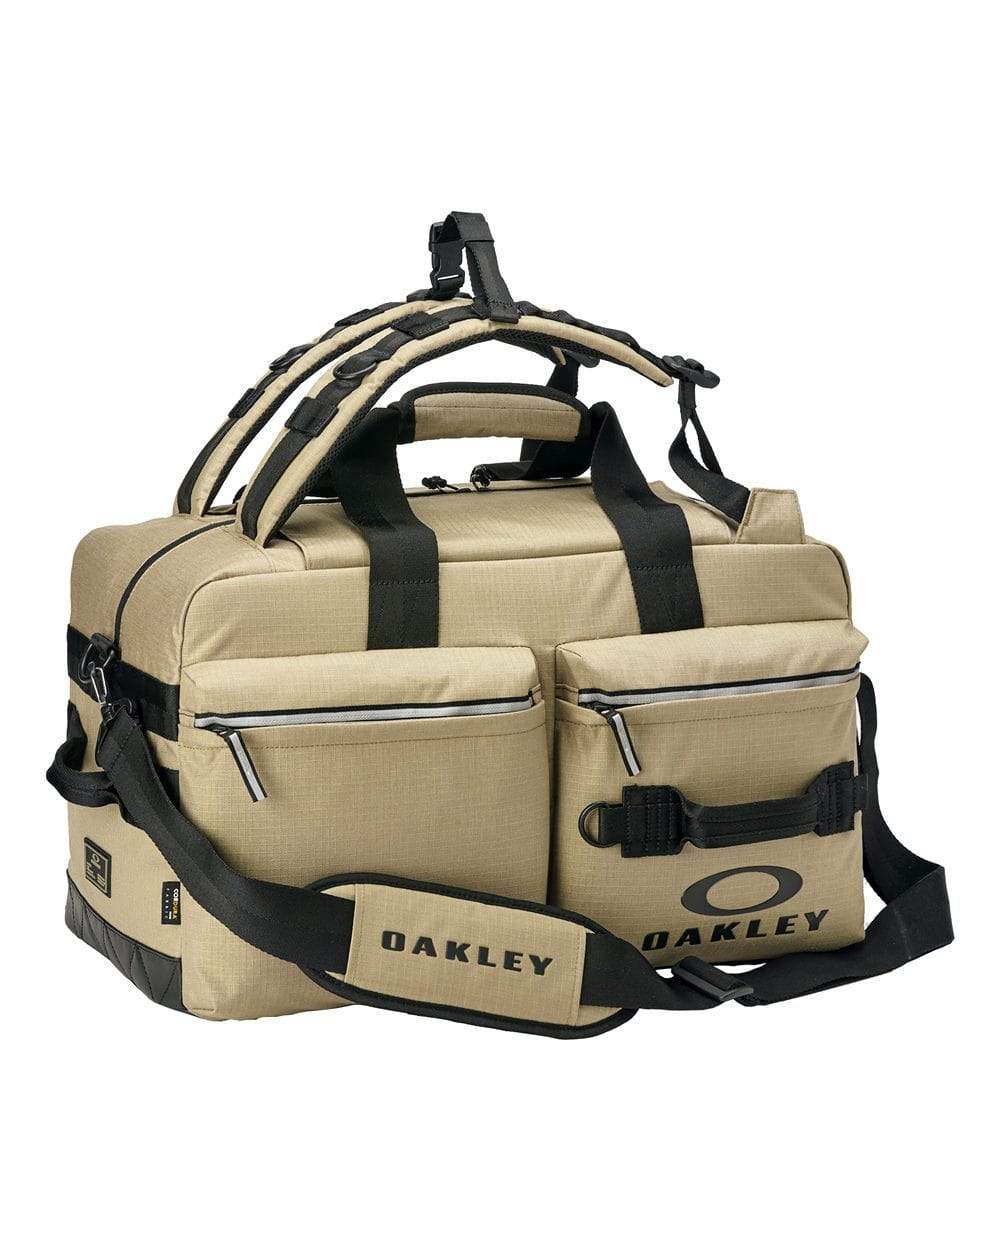 60L travel bag big waterproof oxford duffle luggage bag Review -  LightBagTravel.com | Sport bag men, Mens travel bag, Duffle bag travel